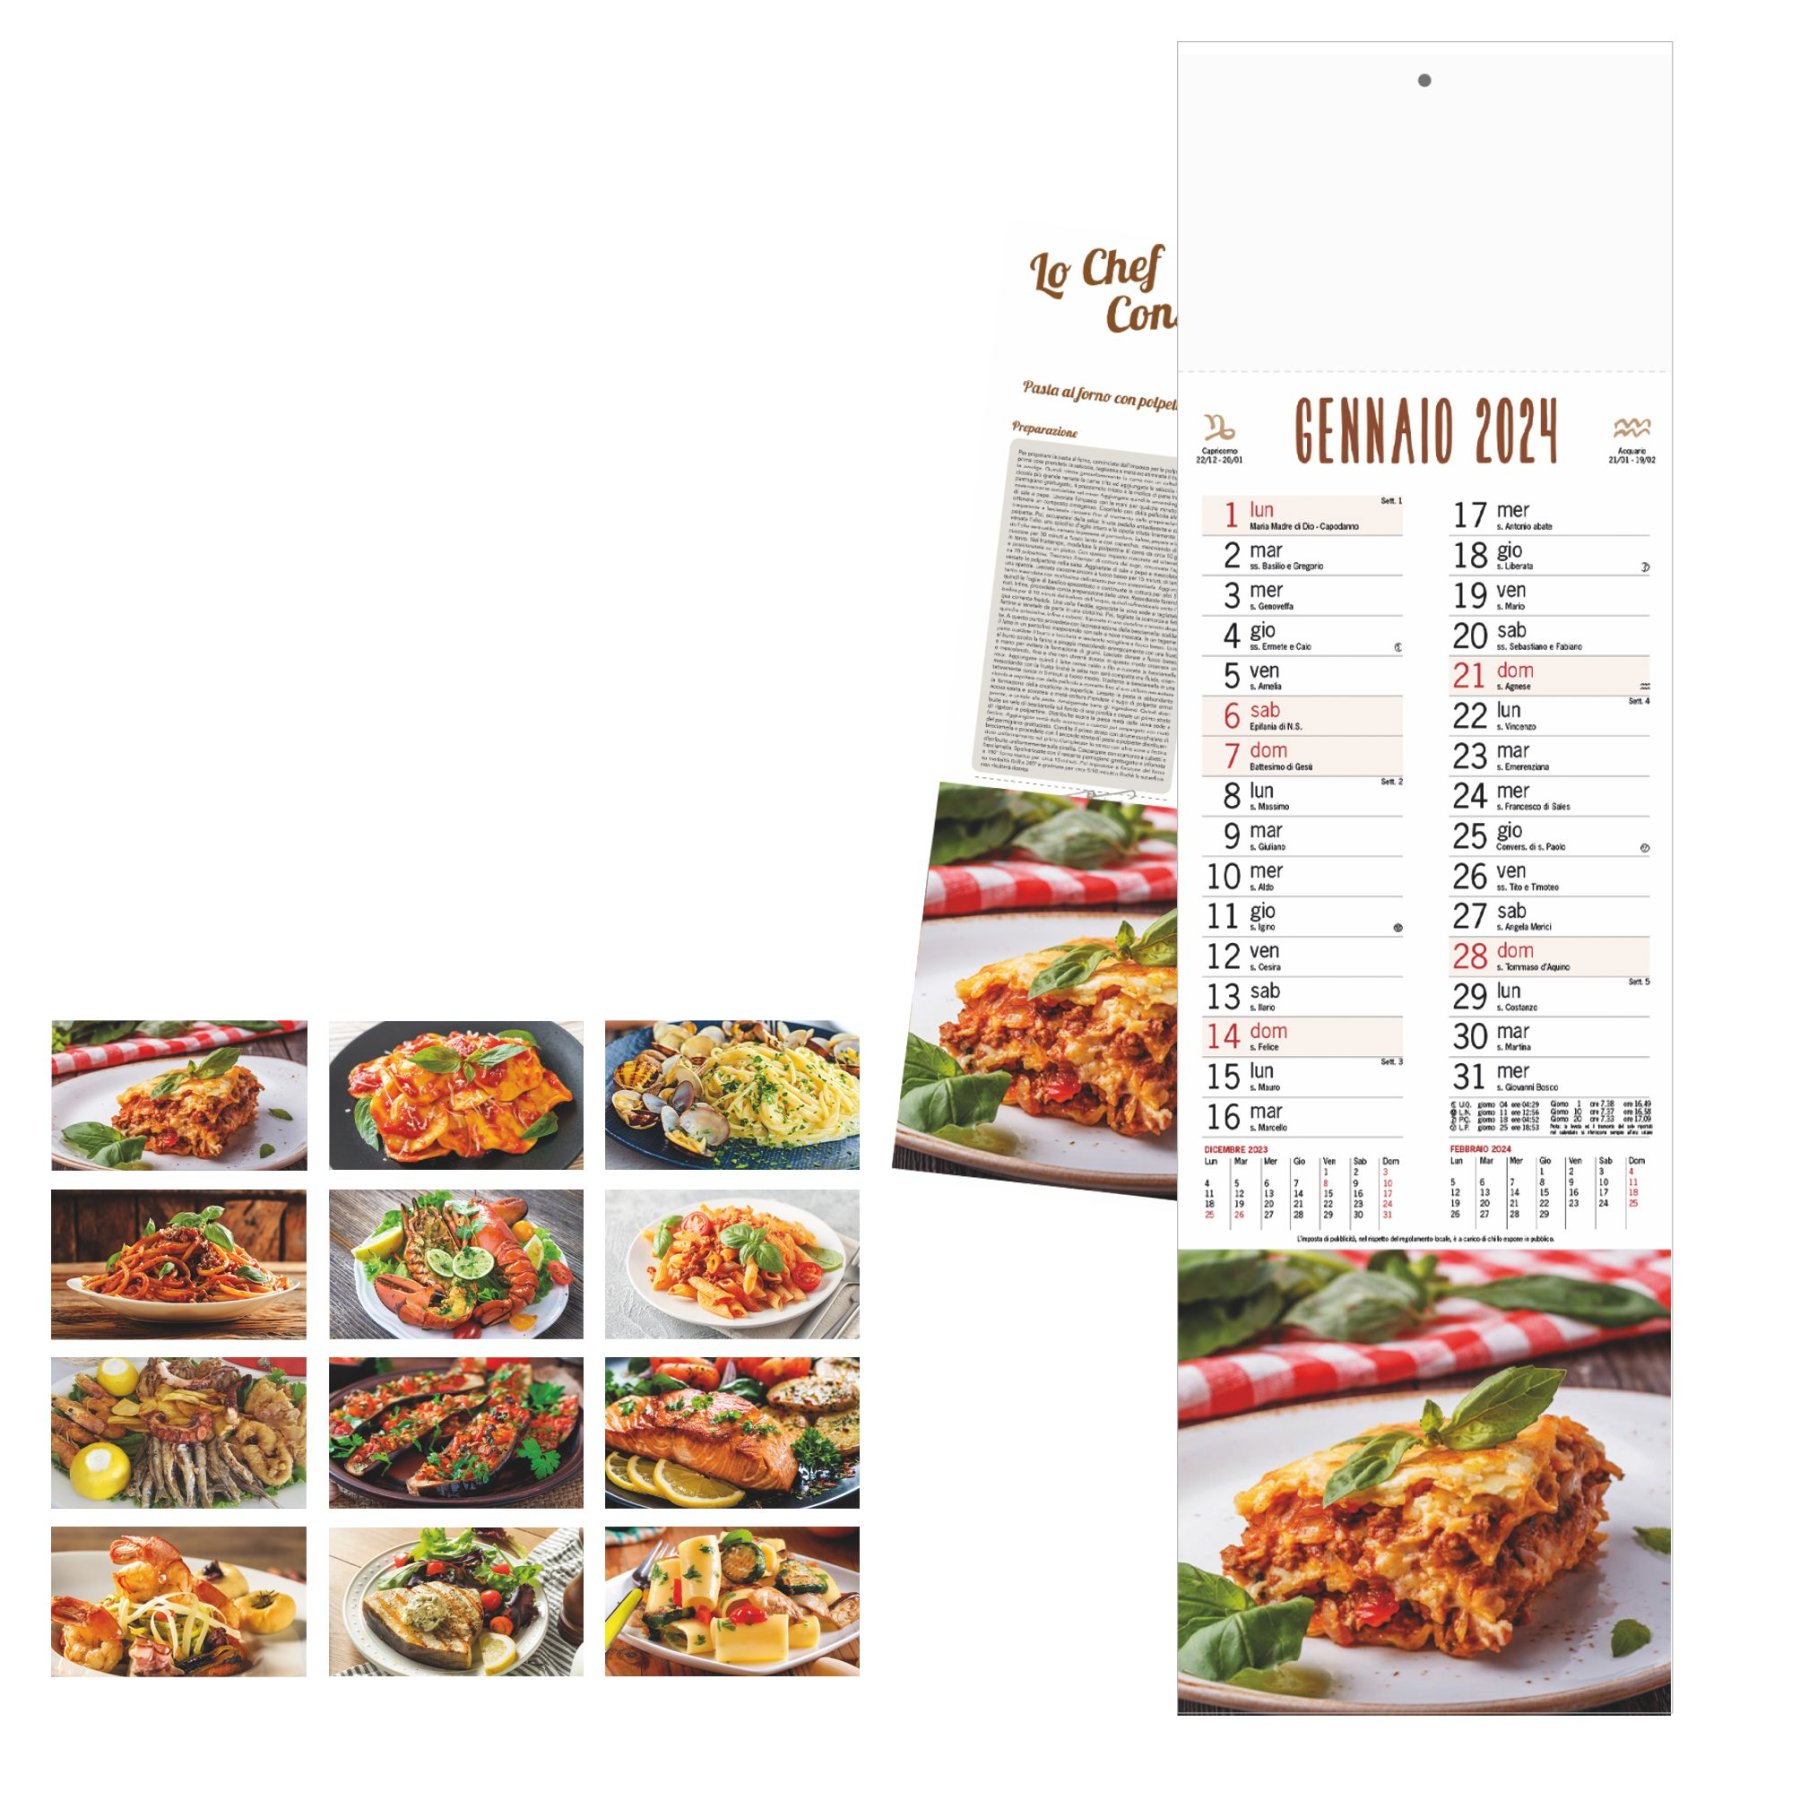 1_b-10-calendario-gastronomia.jpg